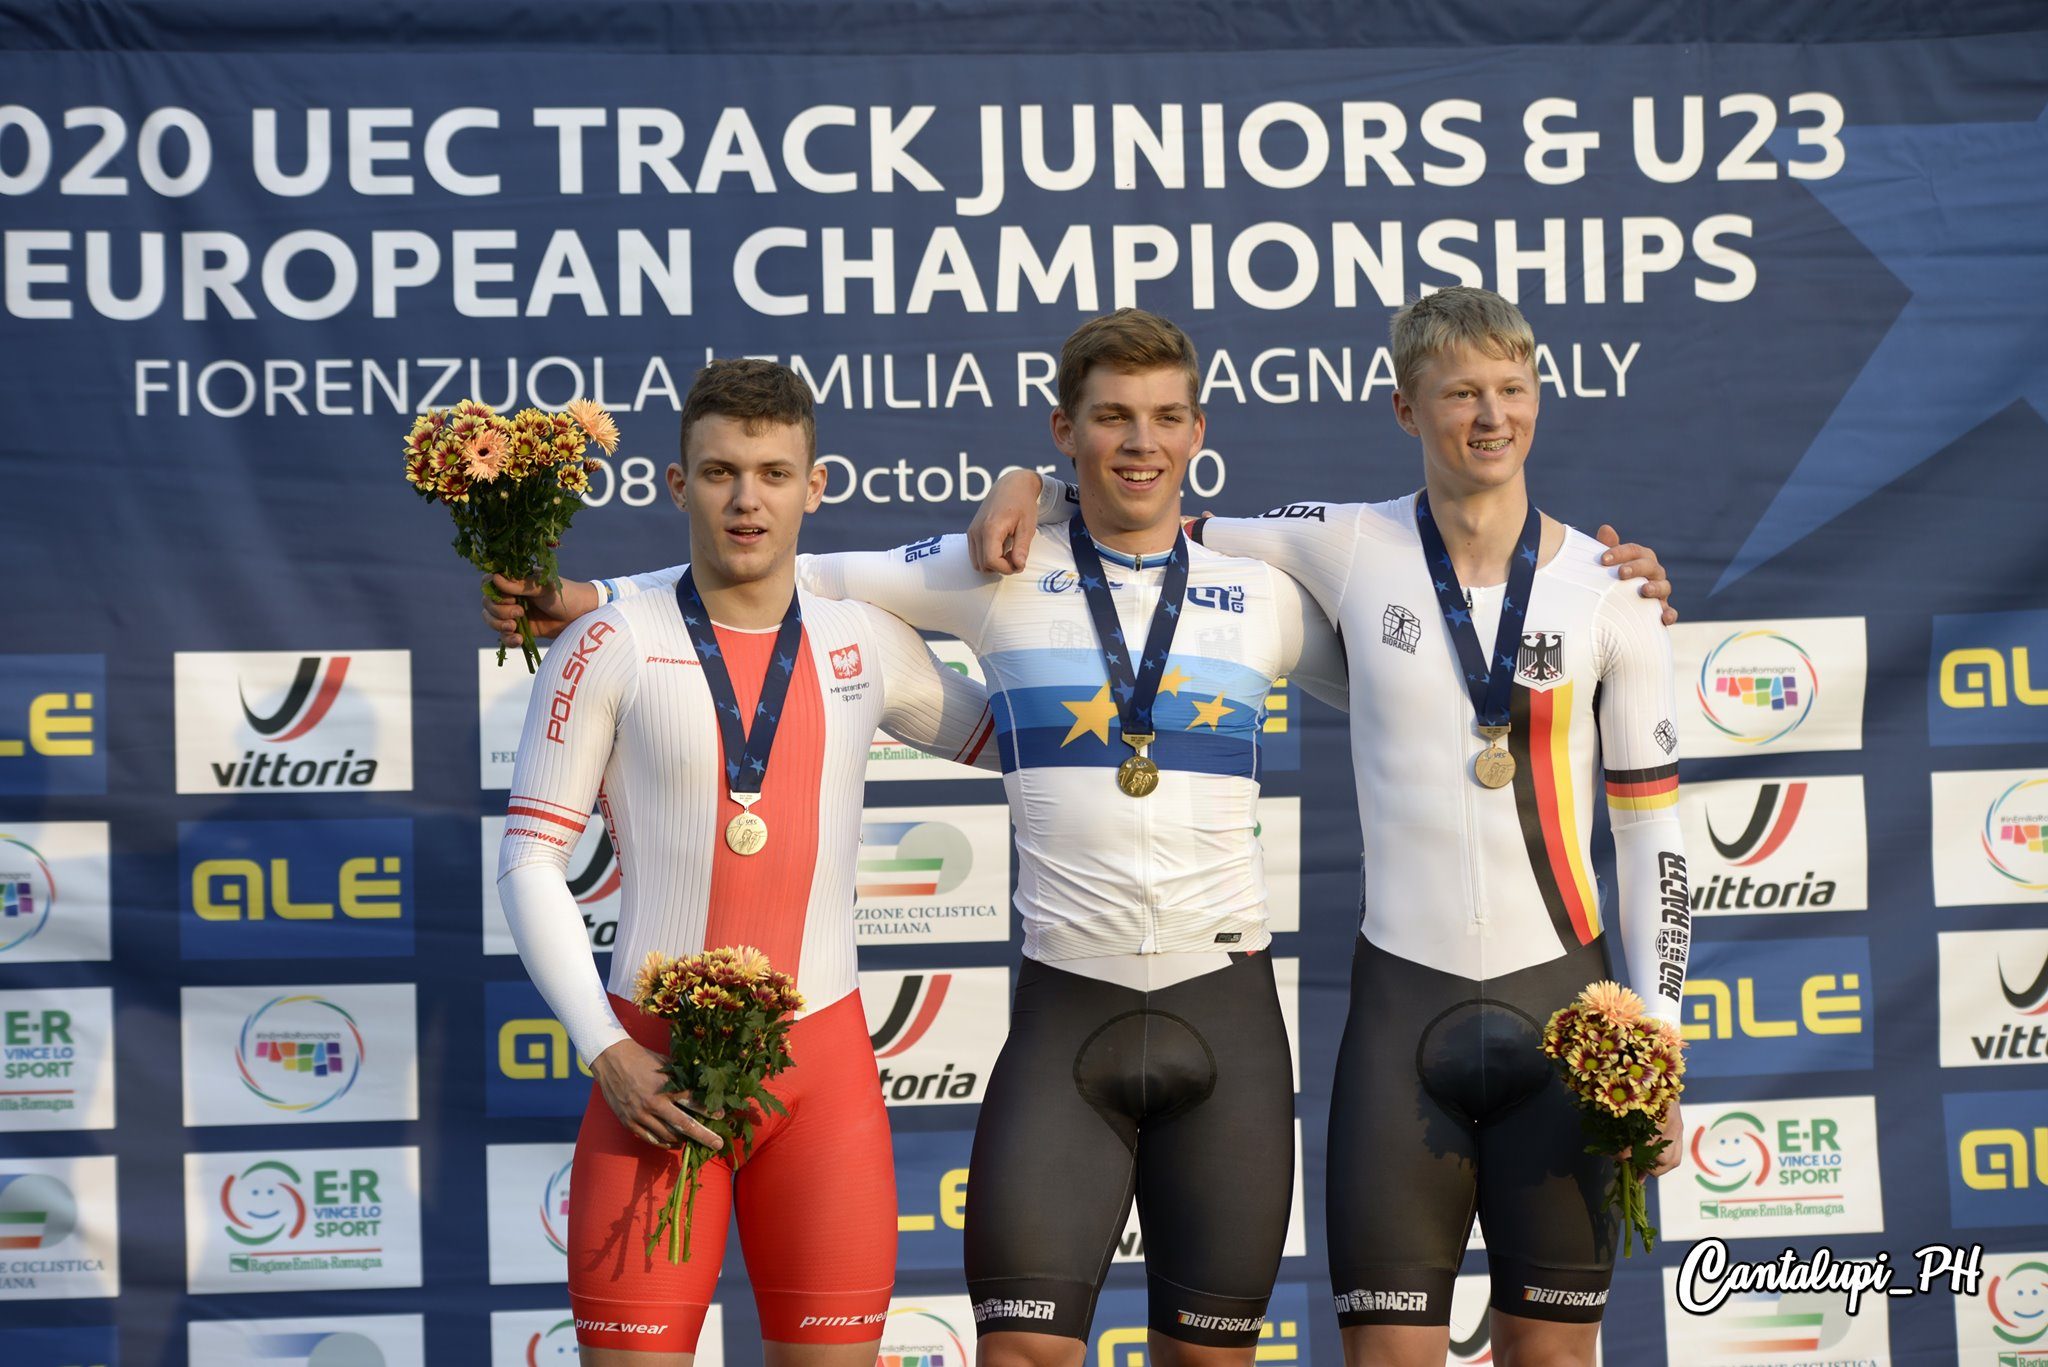 Вилли Леонхард Вайнрих — новый чемпион Европы по велотреку в спринте среди юниоров